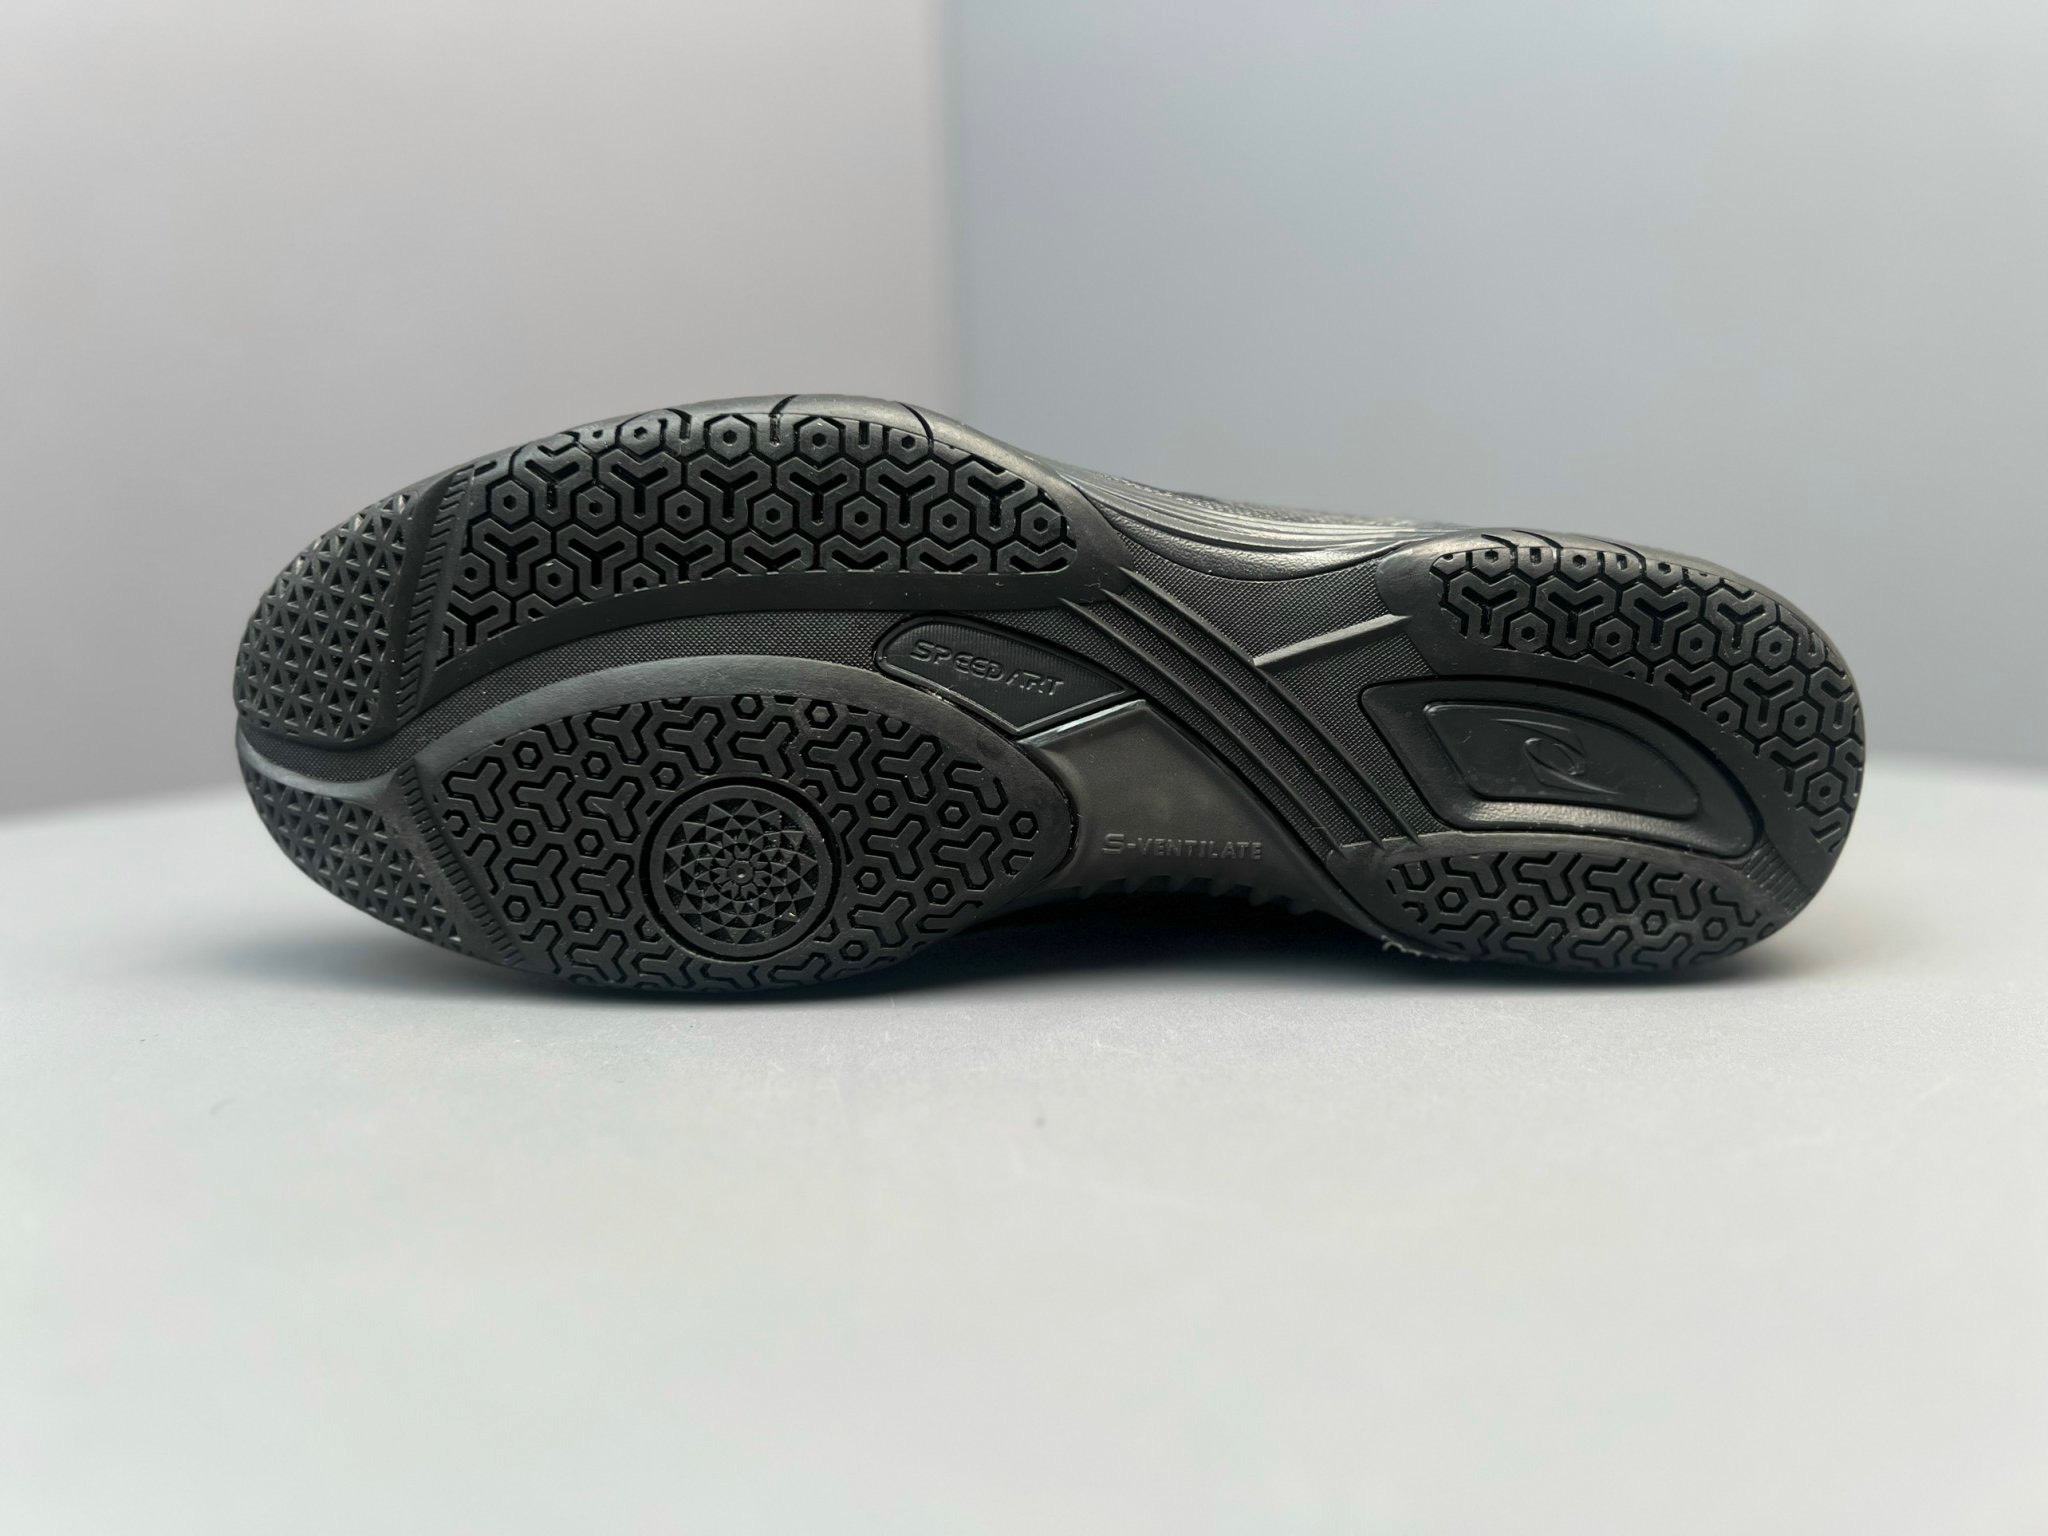 Giày Bóng Bàn Speed Art 28013 Trắng Xanh Mint - Khoáng Khí Tối Đa, Êm Ái, Di Chuyển Linh Hoạt, SIêu Bền Bỉ